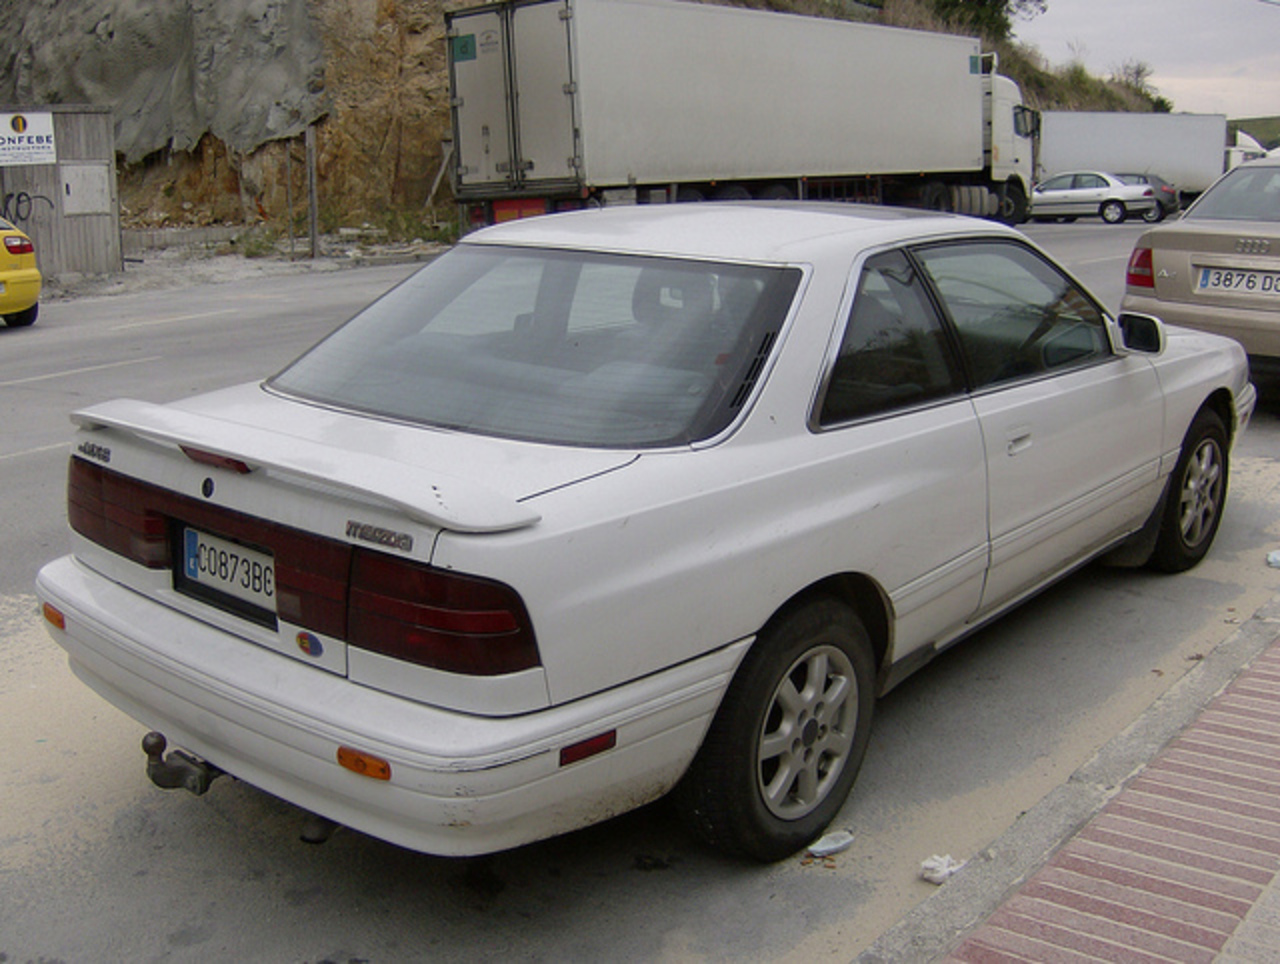 1990 Mazda MX-6 | Flickr - Photo Sharing!